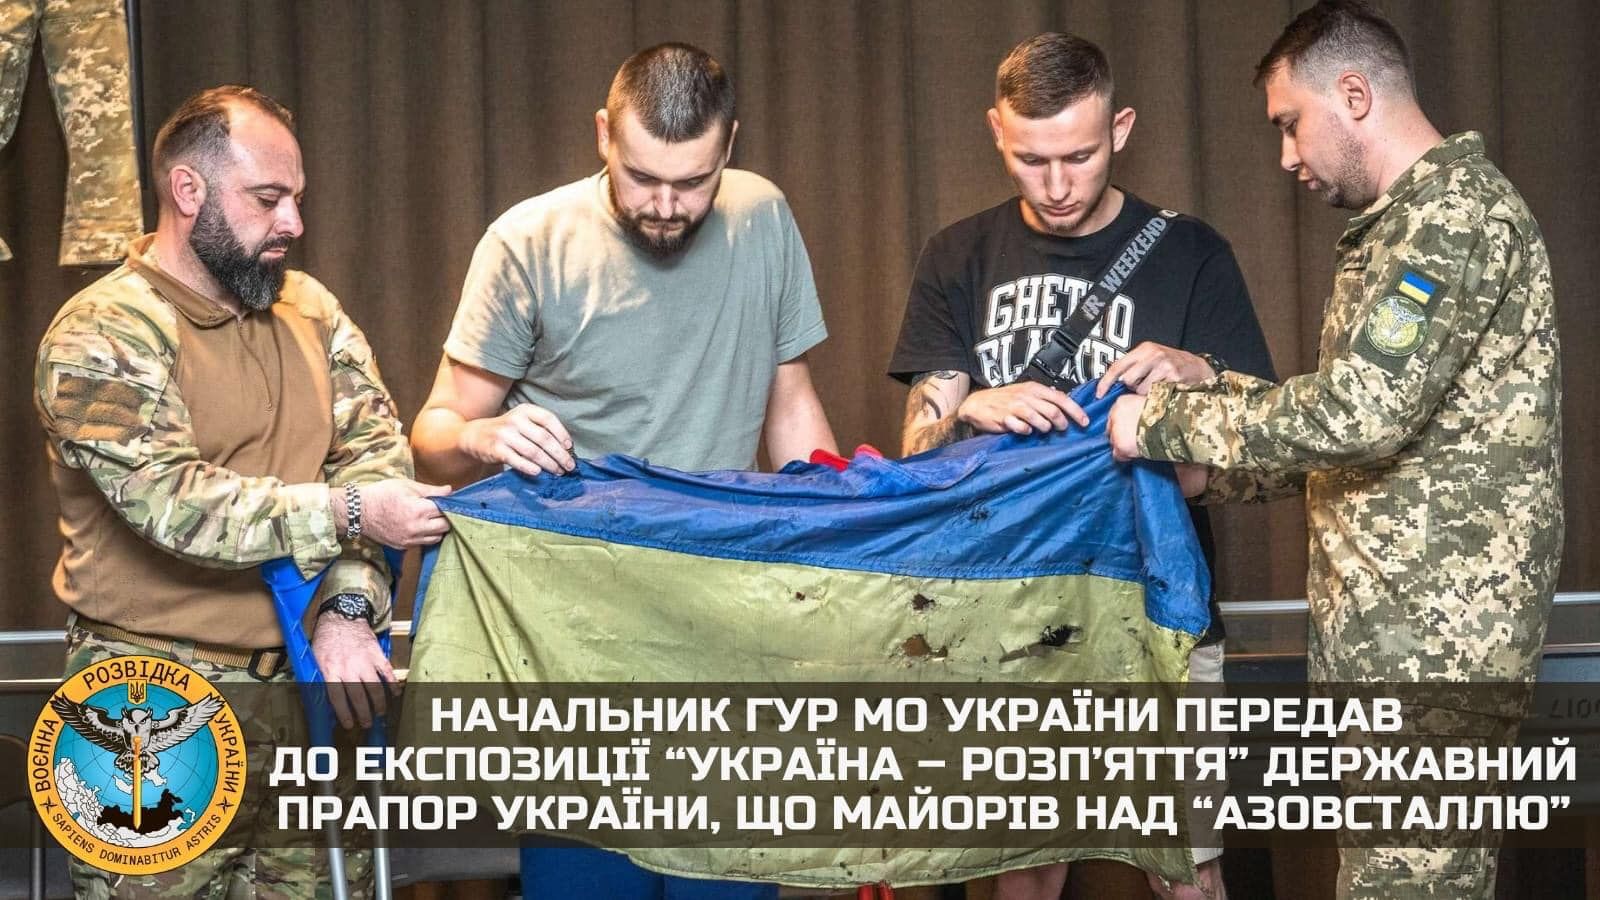 Зазначена реліквія – це Державний Прапор України, що майорів над «Азовсталлю» та, як і поранені воїни, був урятований із пекла сталеварні.